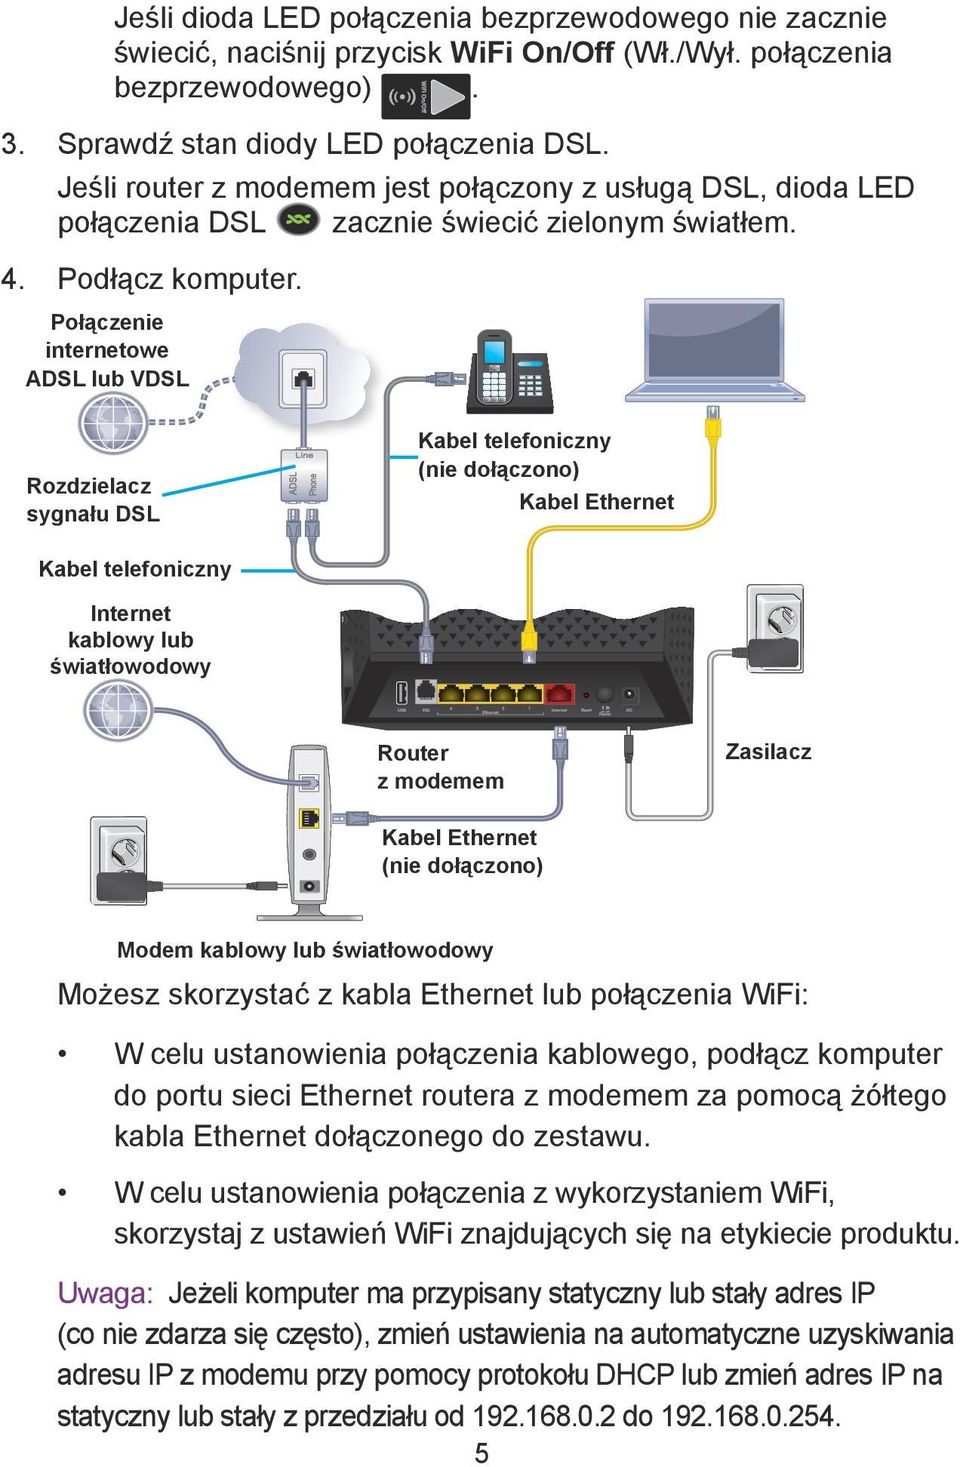 Połączenie internetowe ADSL lub VDSL Rozdzielacz sygnału DSL Kabel telefoniczny (nie dołączono) Kabel Ethernet Kabel telefoniczny Internet kablowy lub światłowodowy Router z modemem Zasilacz Kabel